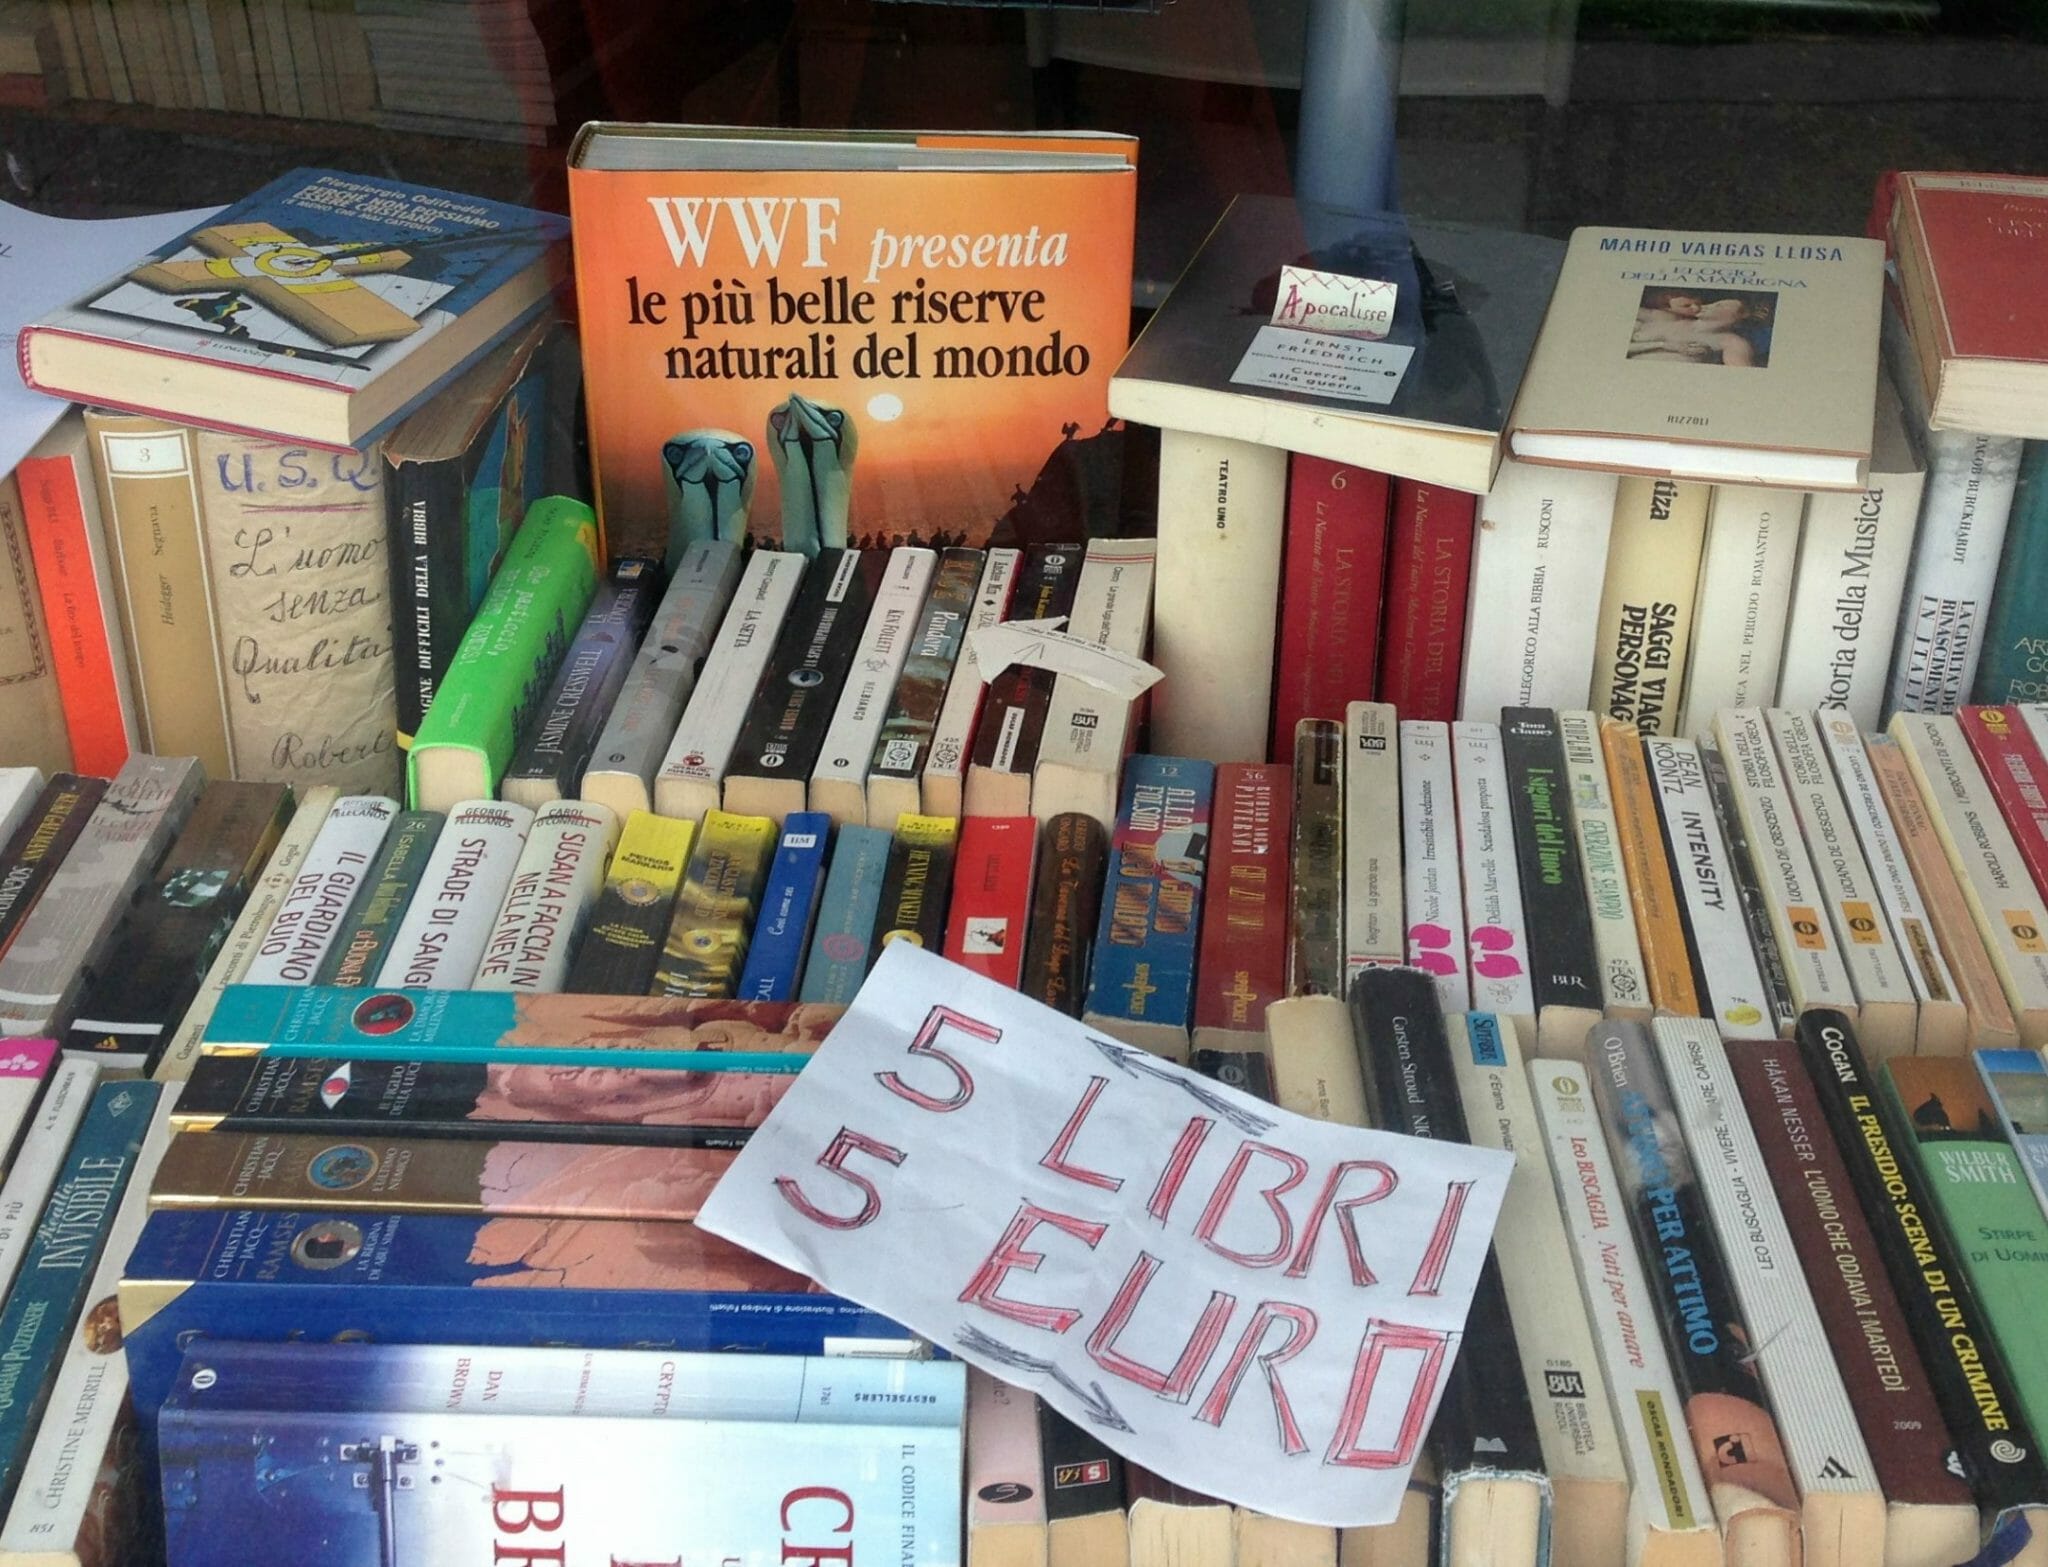 Daniele, il farmacista-libraio di Milano: migliaia di libri usati